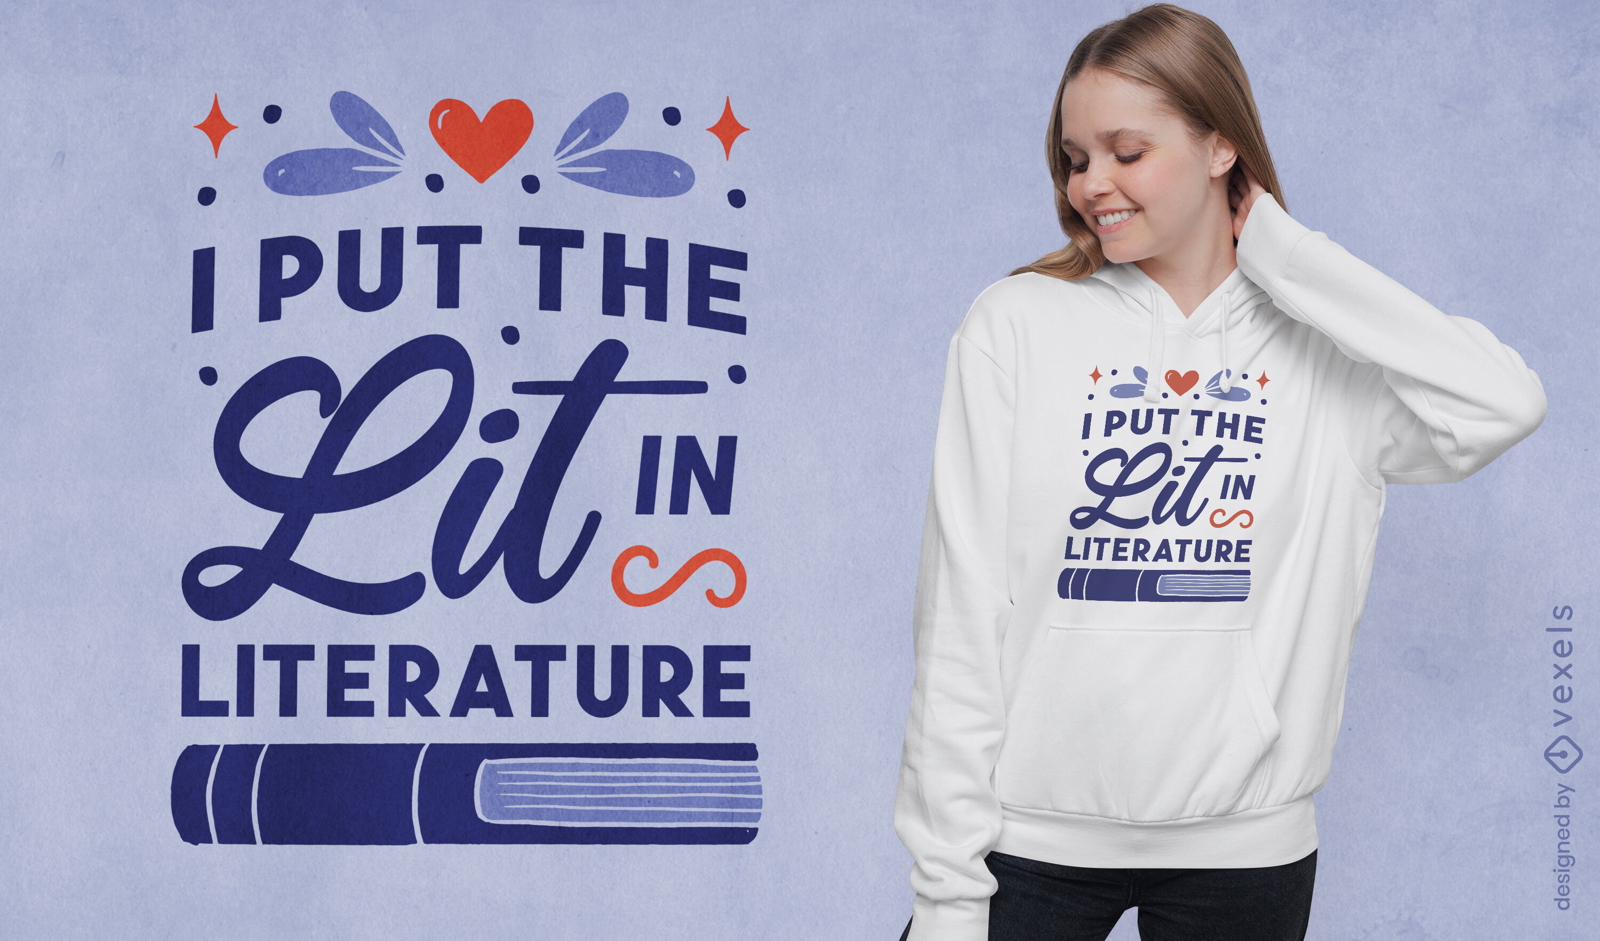 Dise?o de camiseta de cita de libro de literatura.